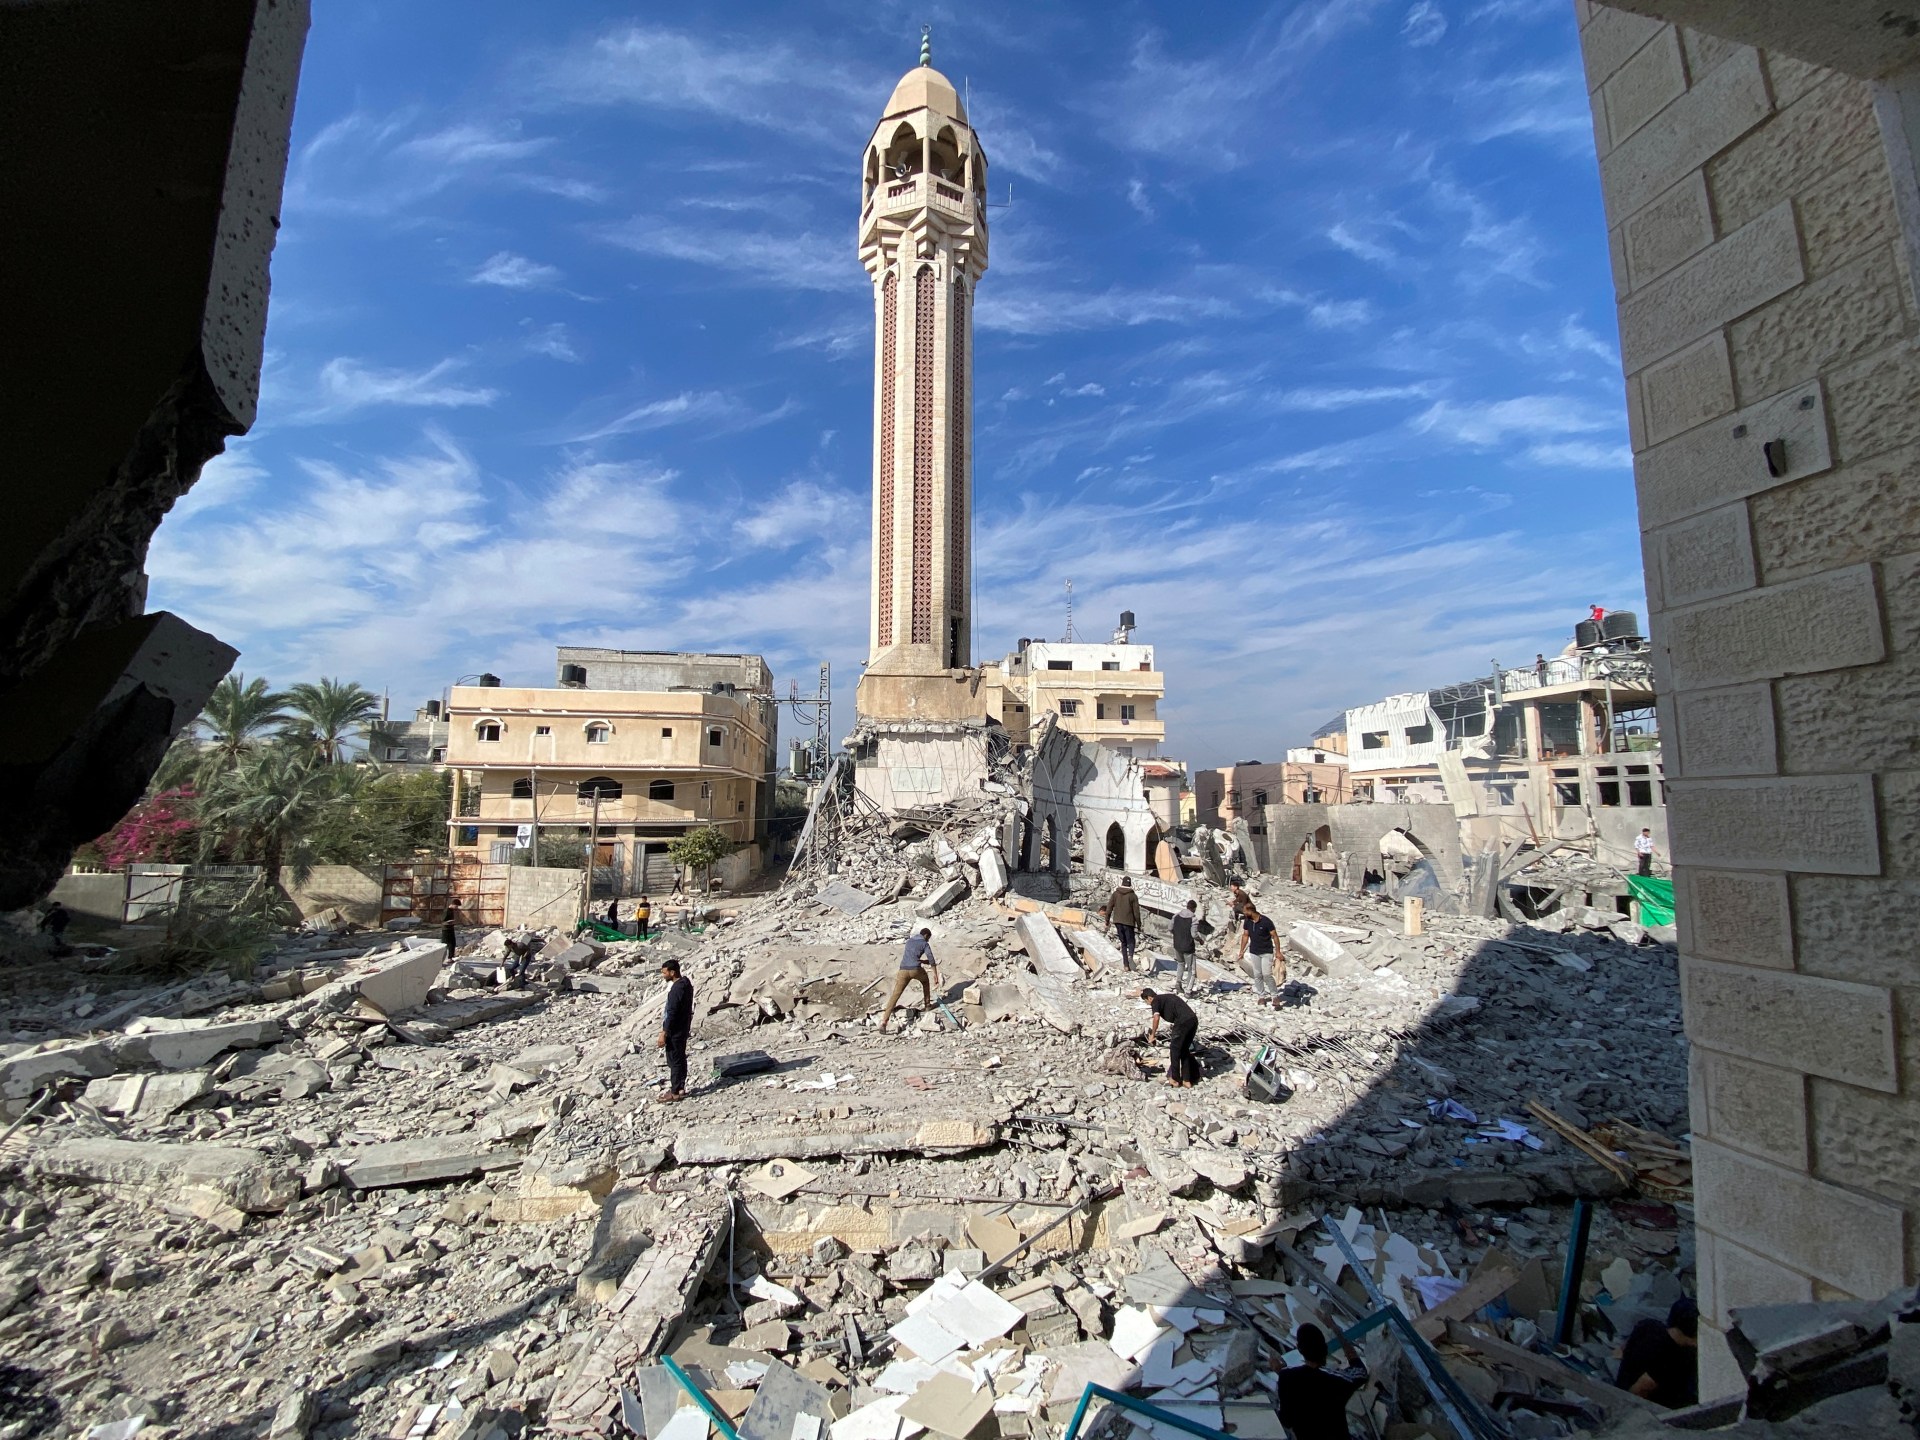 حماس تقول إن مسجد غزة دمر وتحث اليونسكو على إنقاذ التراث |  أخبار غزة